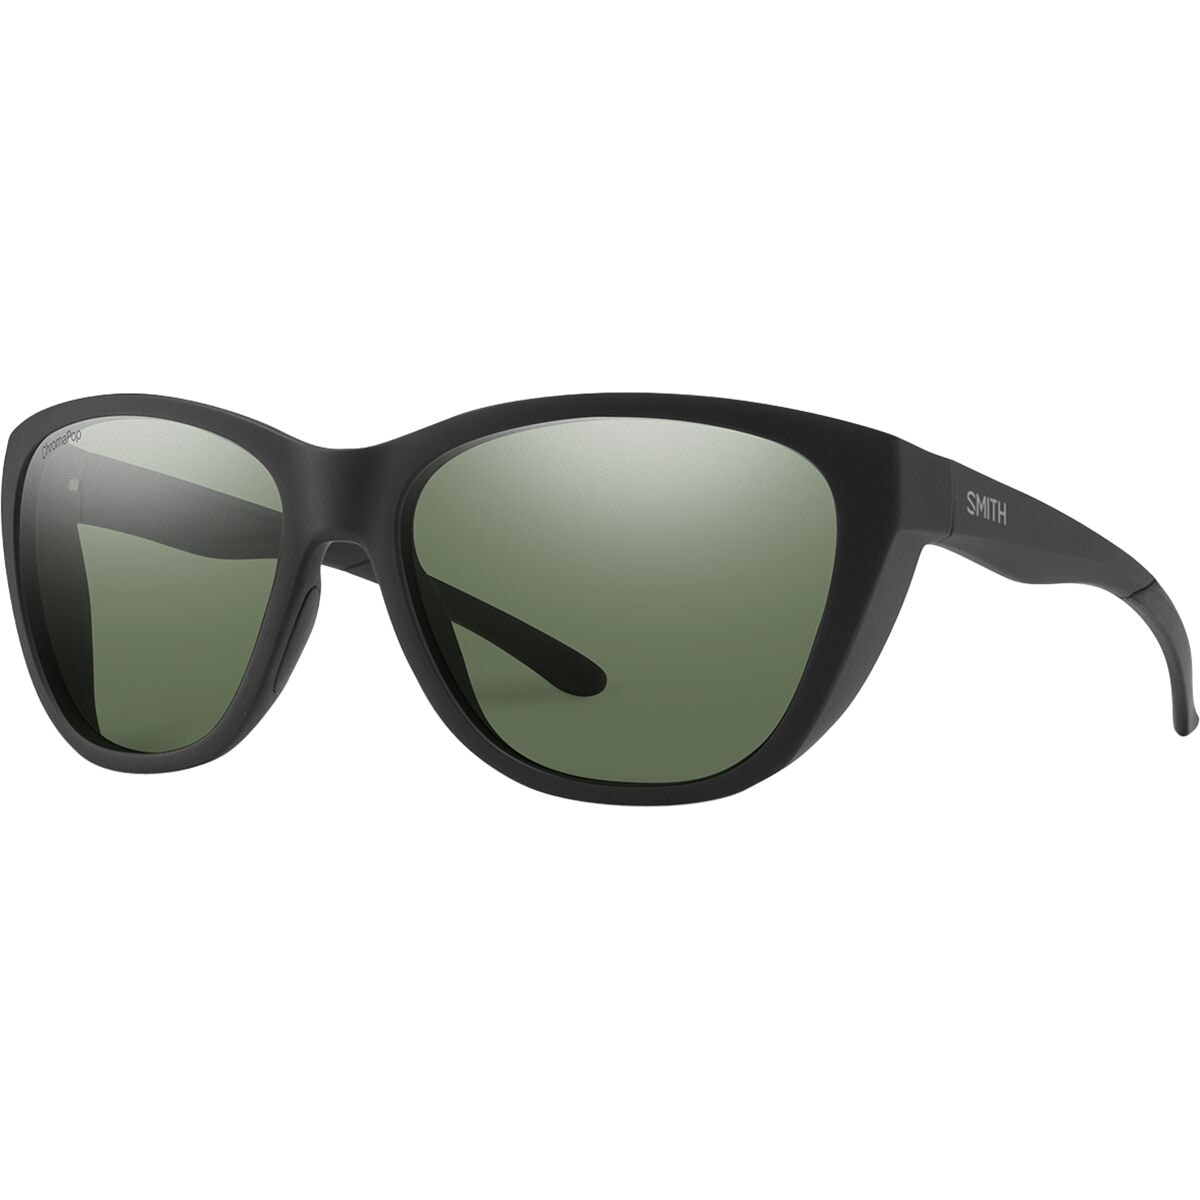 Поляризованные солнцезащитные очки Shoal ChromaPop Smith